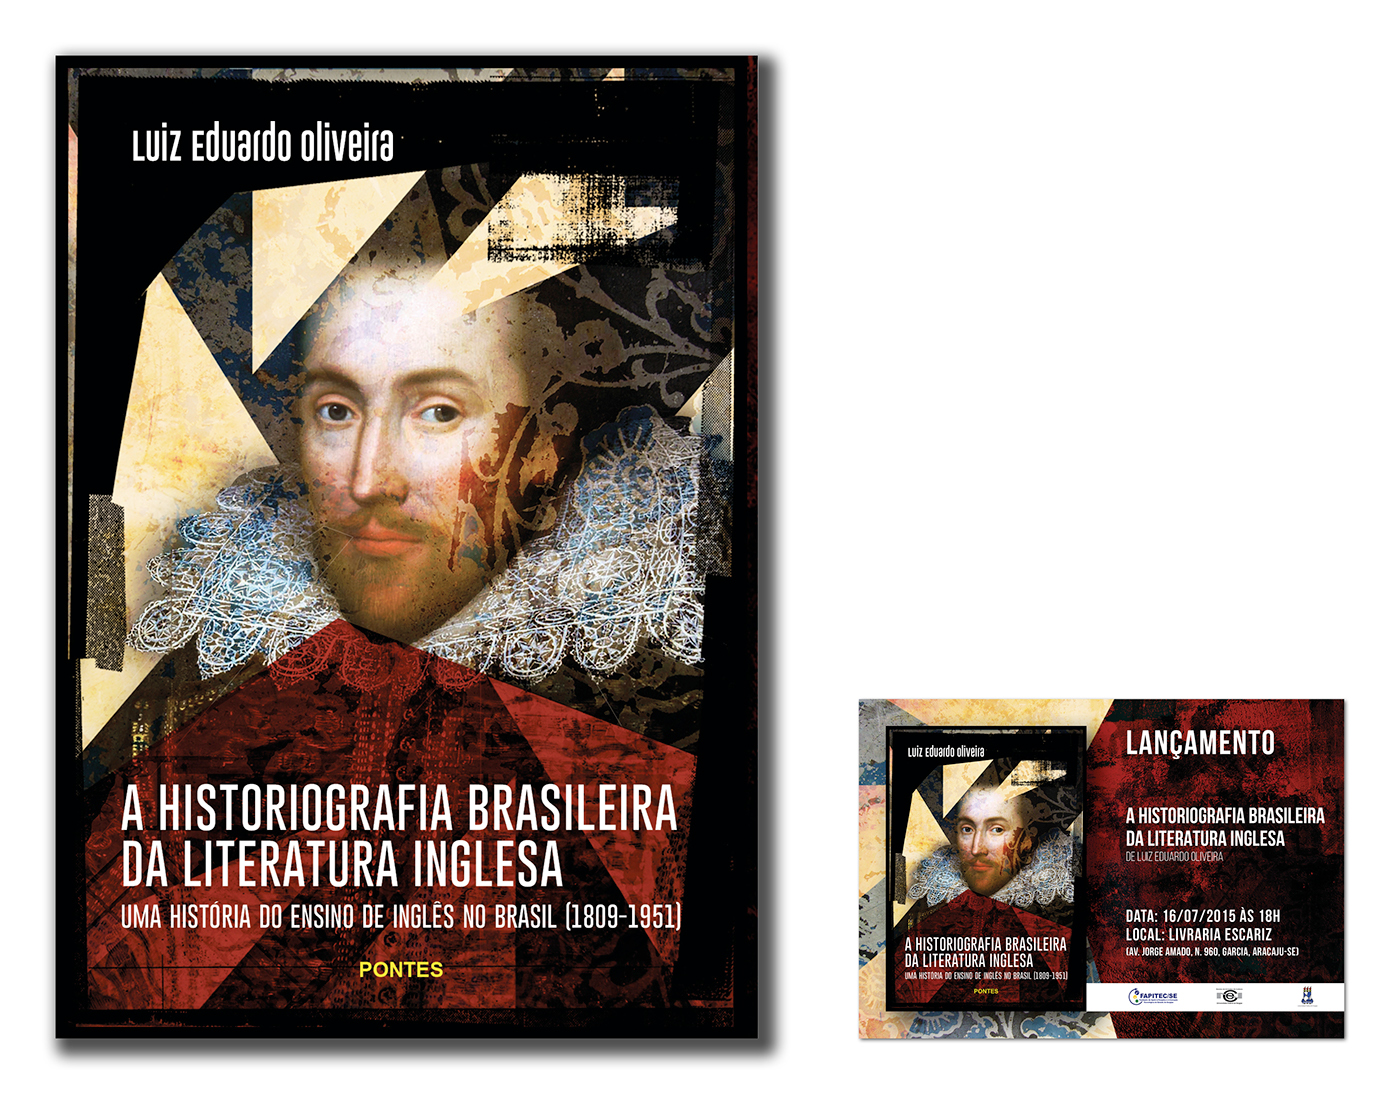 Cover Book capa livro Luiz Eduardo Oliveira Editora Pontes arte digital arte gráfica design gráfico Fábio Viana